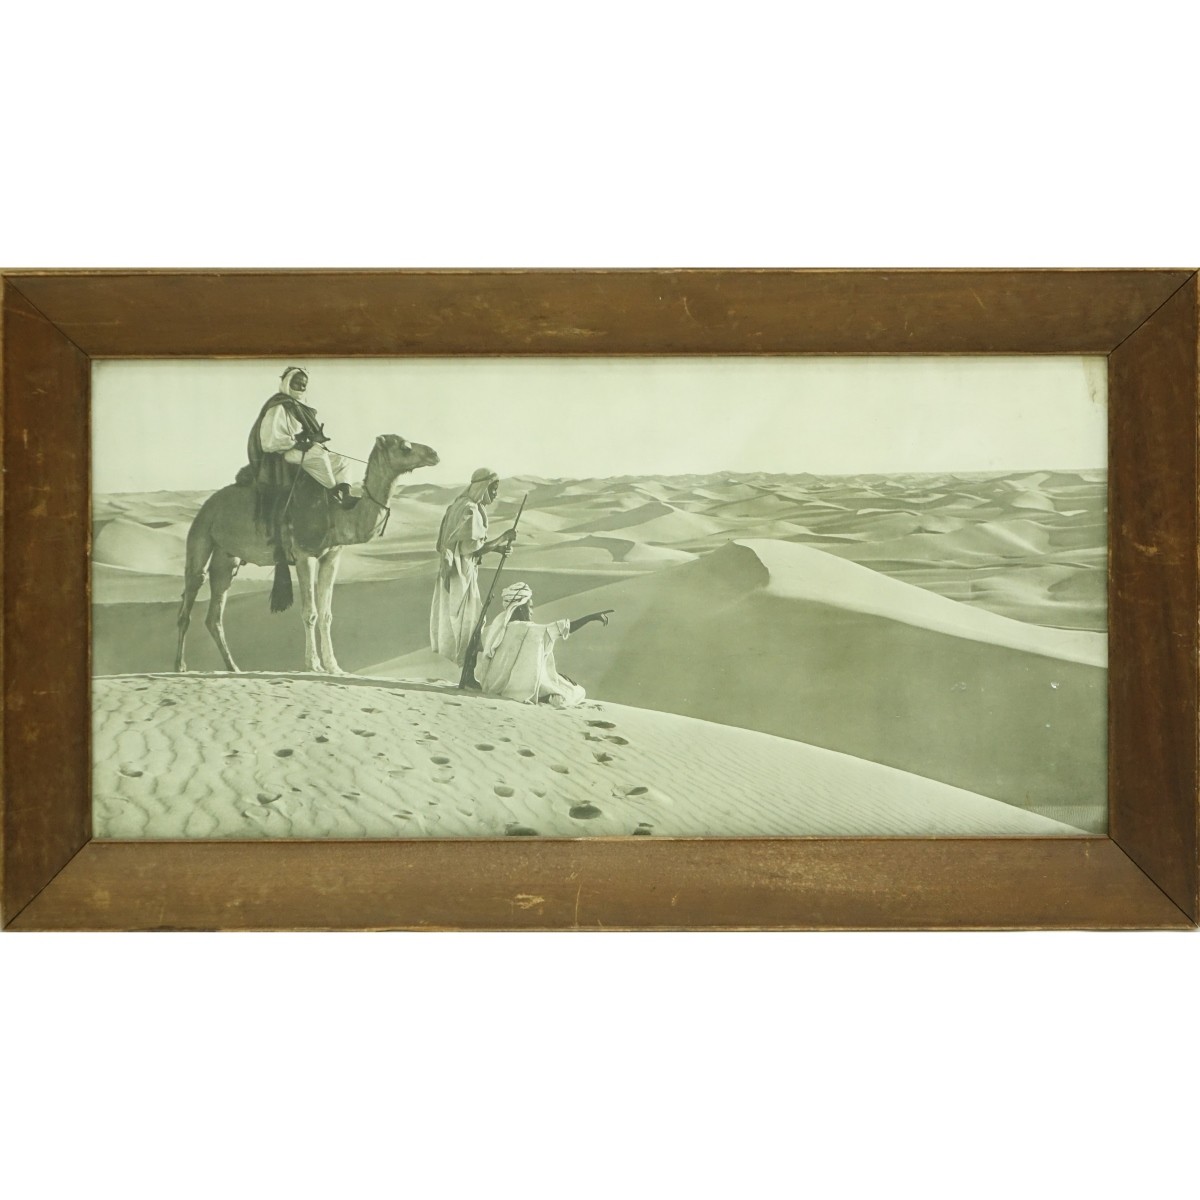 Vintage Black & White Print "Arabs In The Desert"